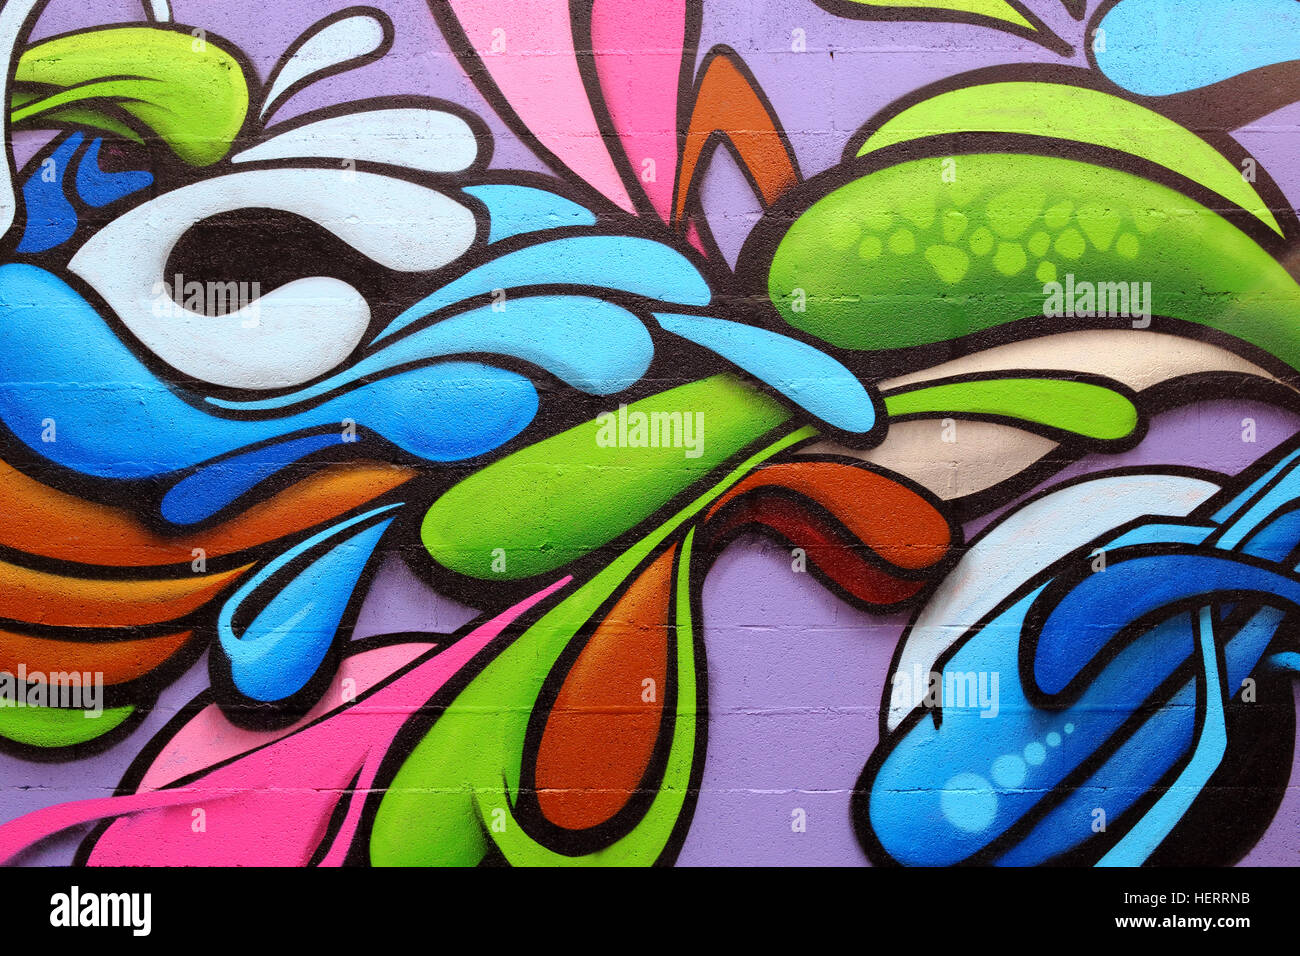 Dettaglio di un coloratissimo graffito art su una parete, sfondo astratto Foto Stock